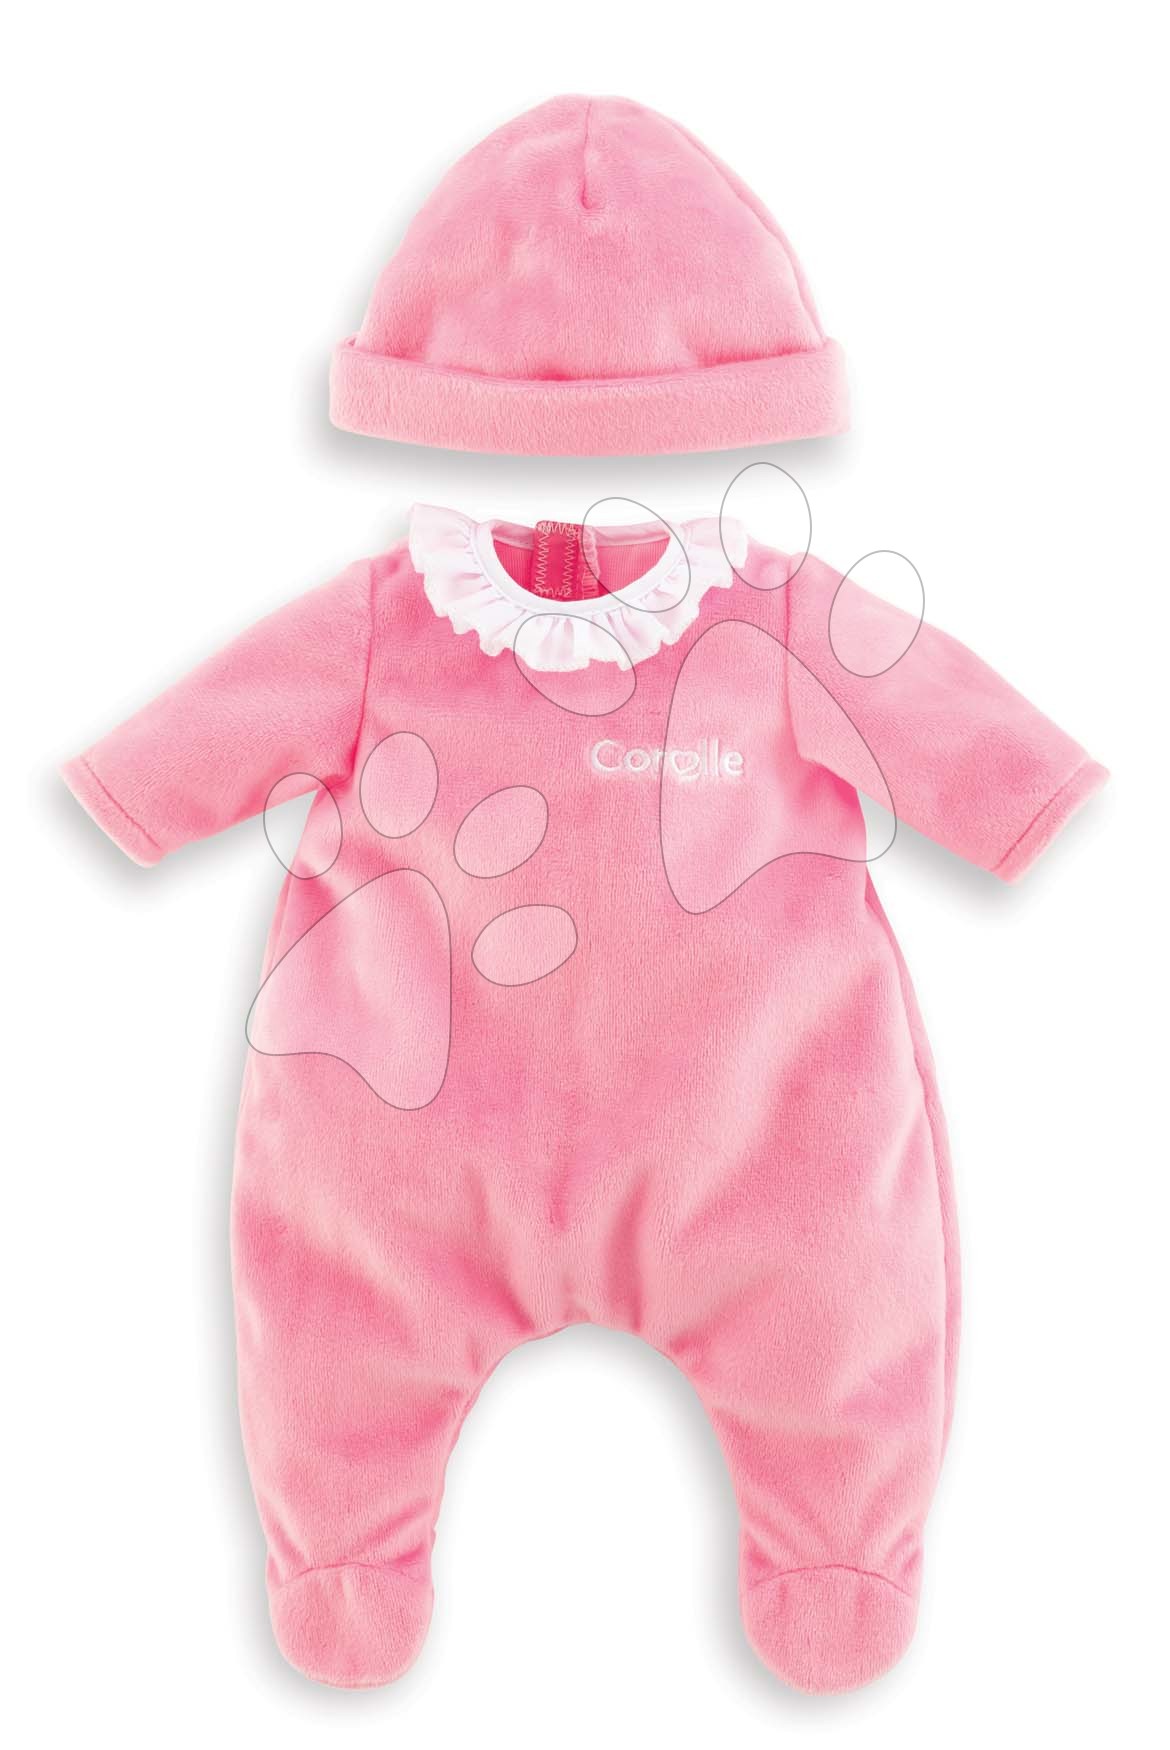 Pizsama Pajamas Pink & Hat Mon Premier Poupon Corolle 30 cm játékbabána 18 hó-tól Baba játék webáruház - játék rendelés online